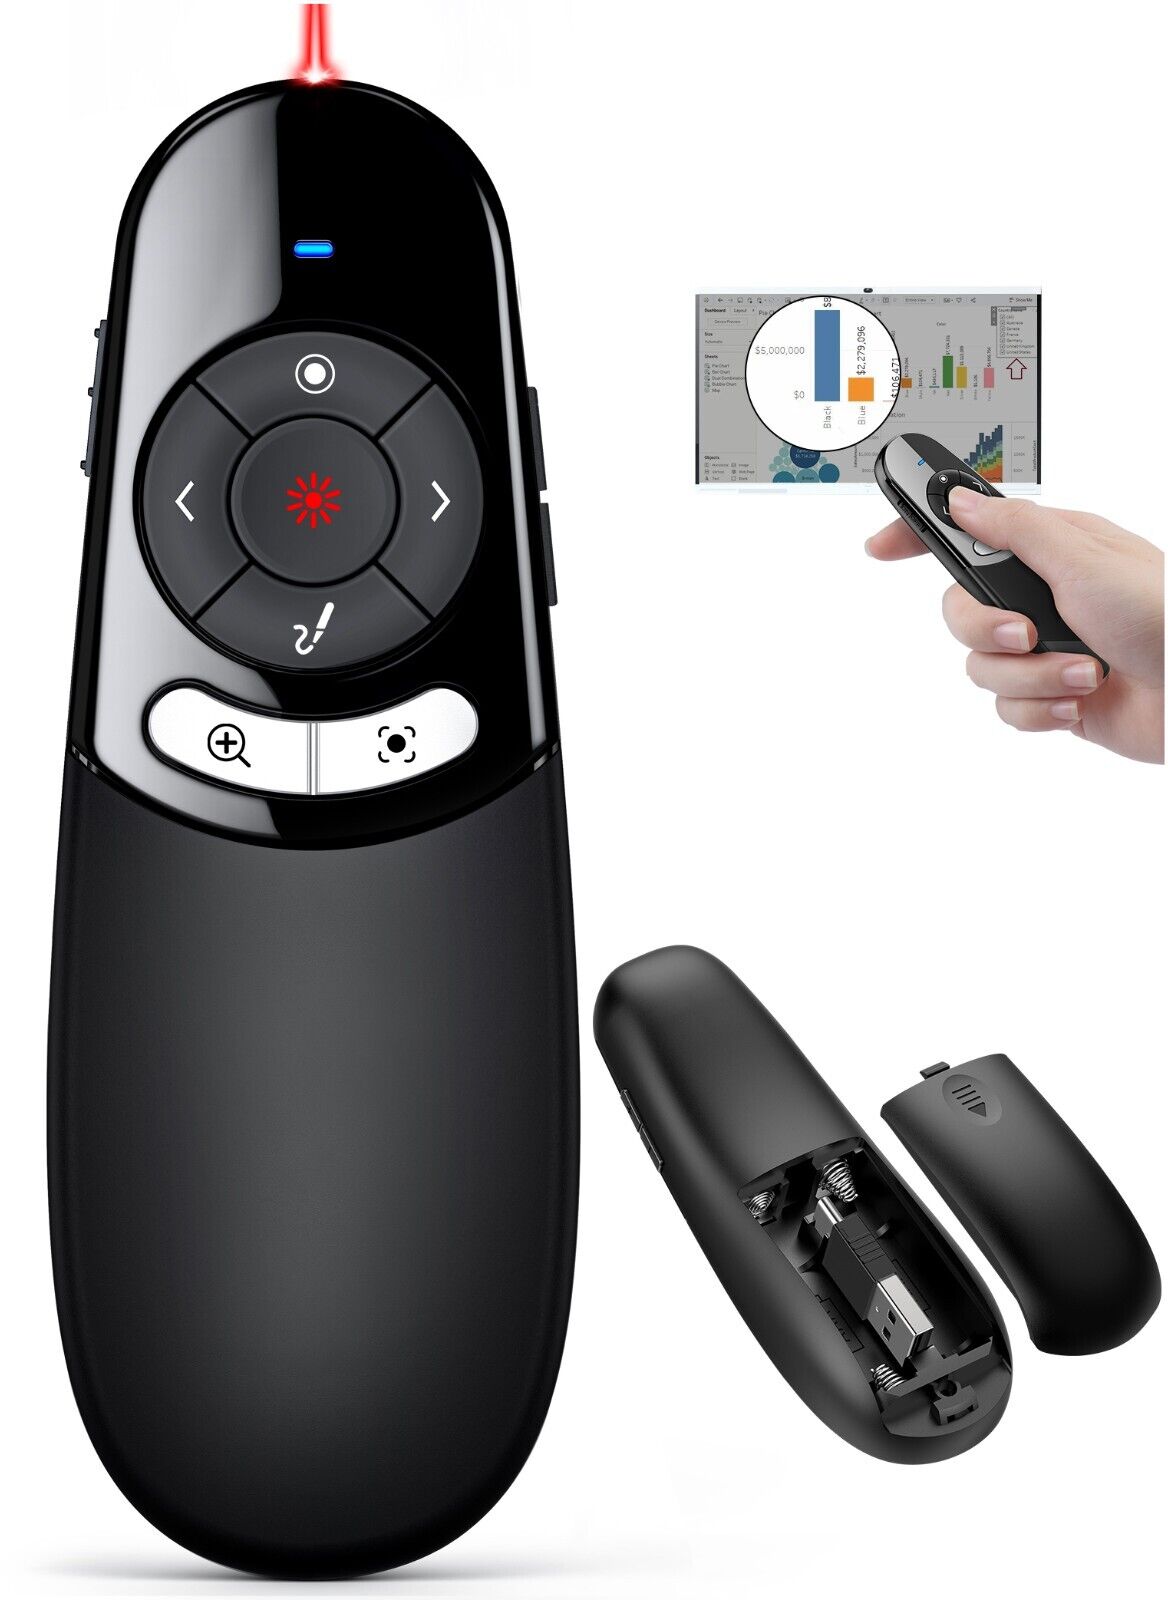 For PC Power point Presentation Remote Wireless Presenter Laser Pointer Clicker